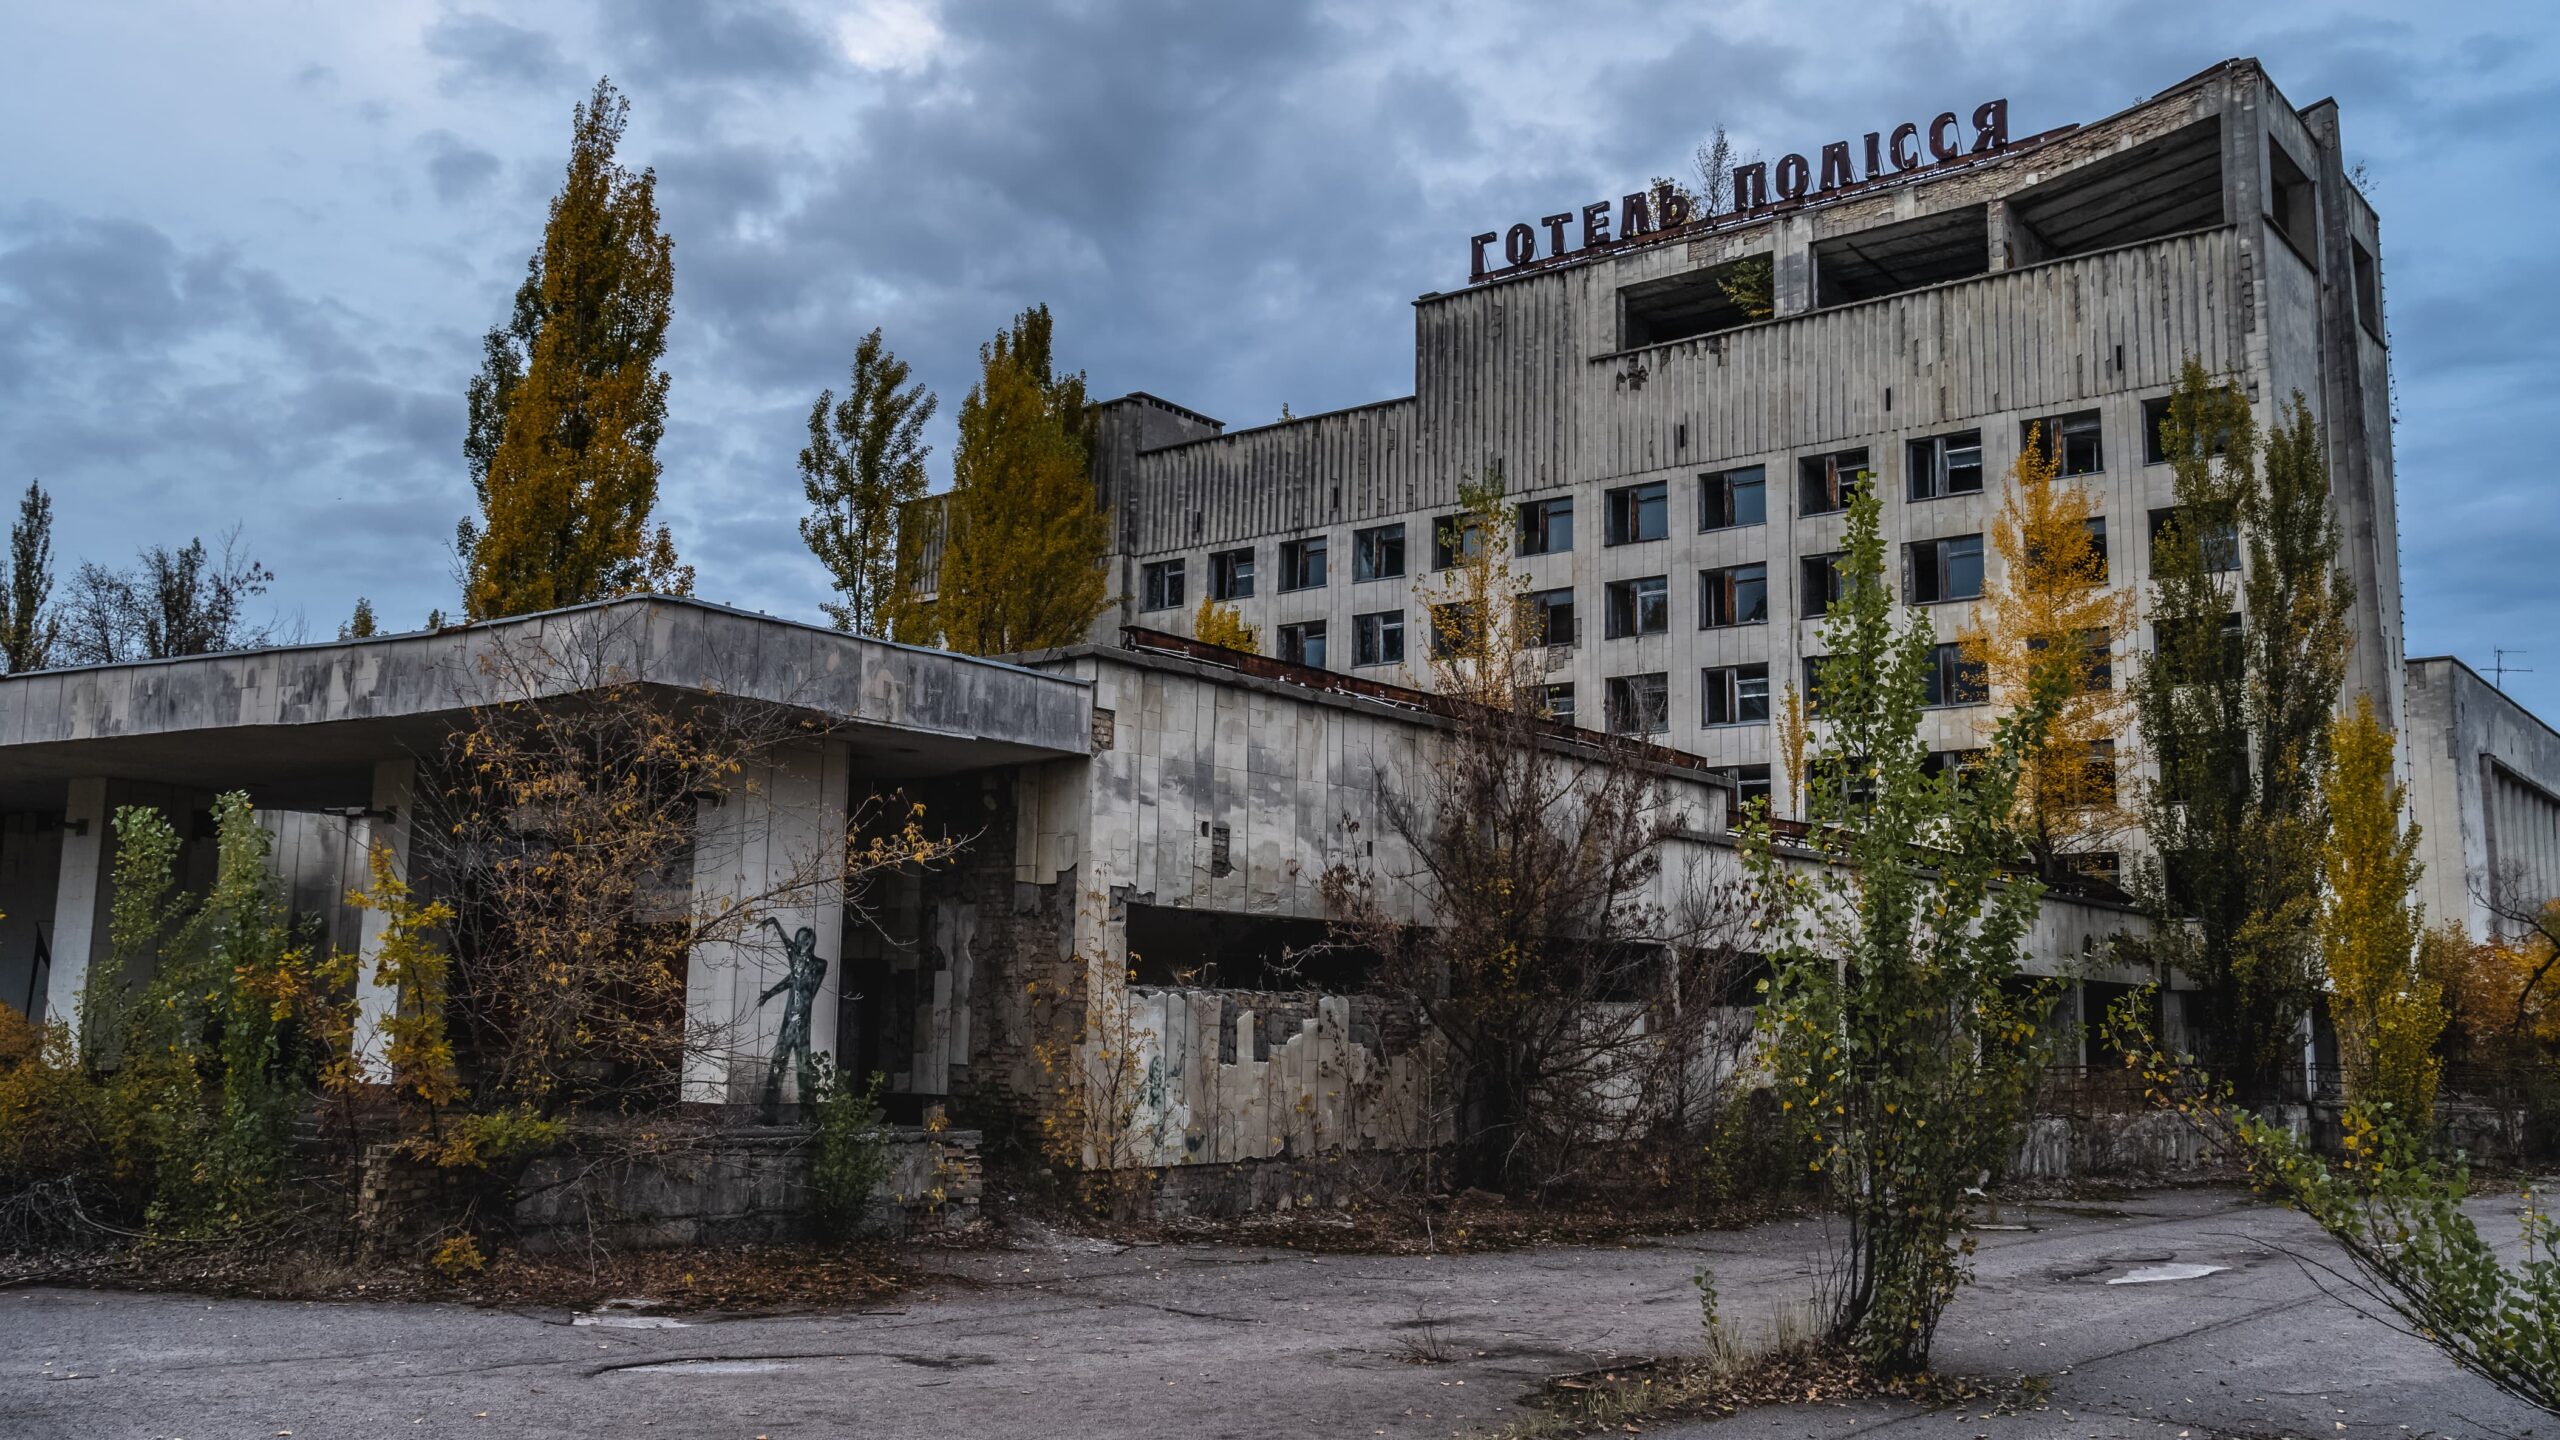 Chernobyl, Kyiv Oblast, Ukraine